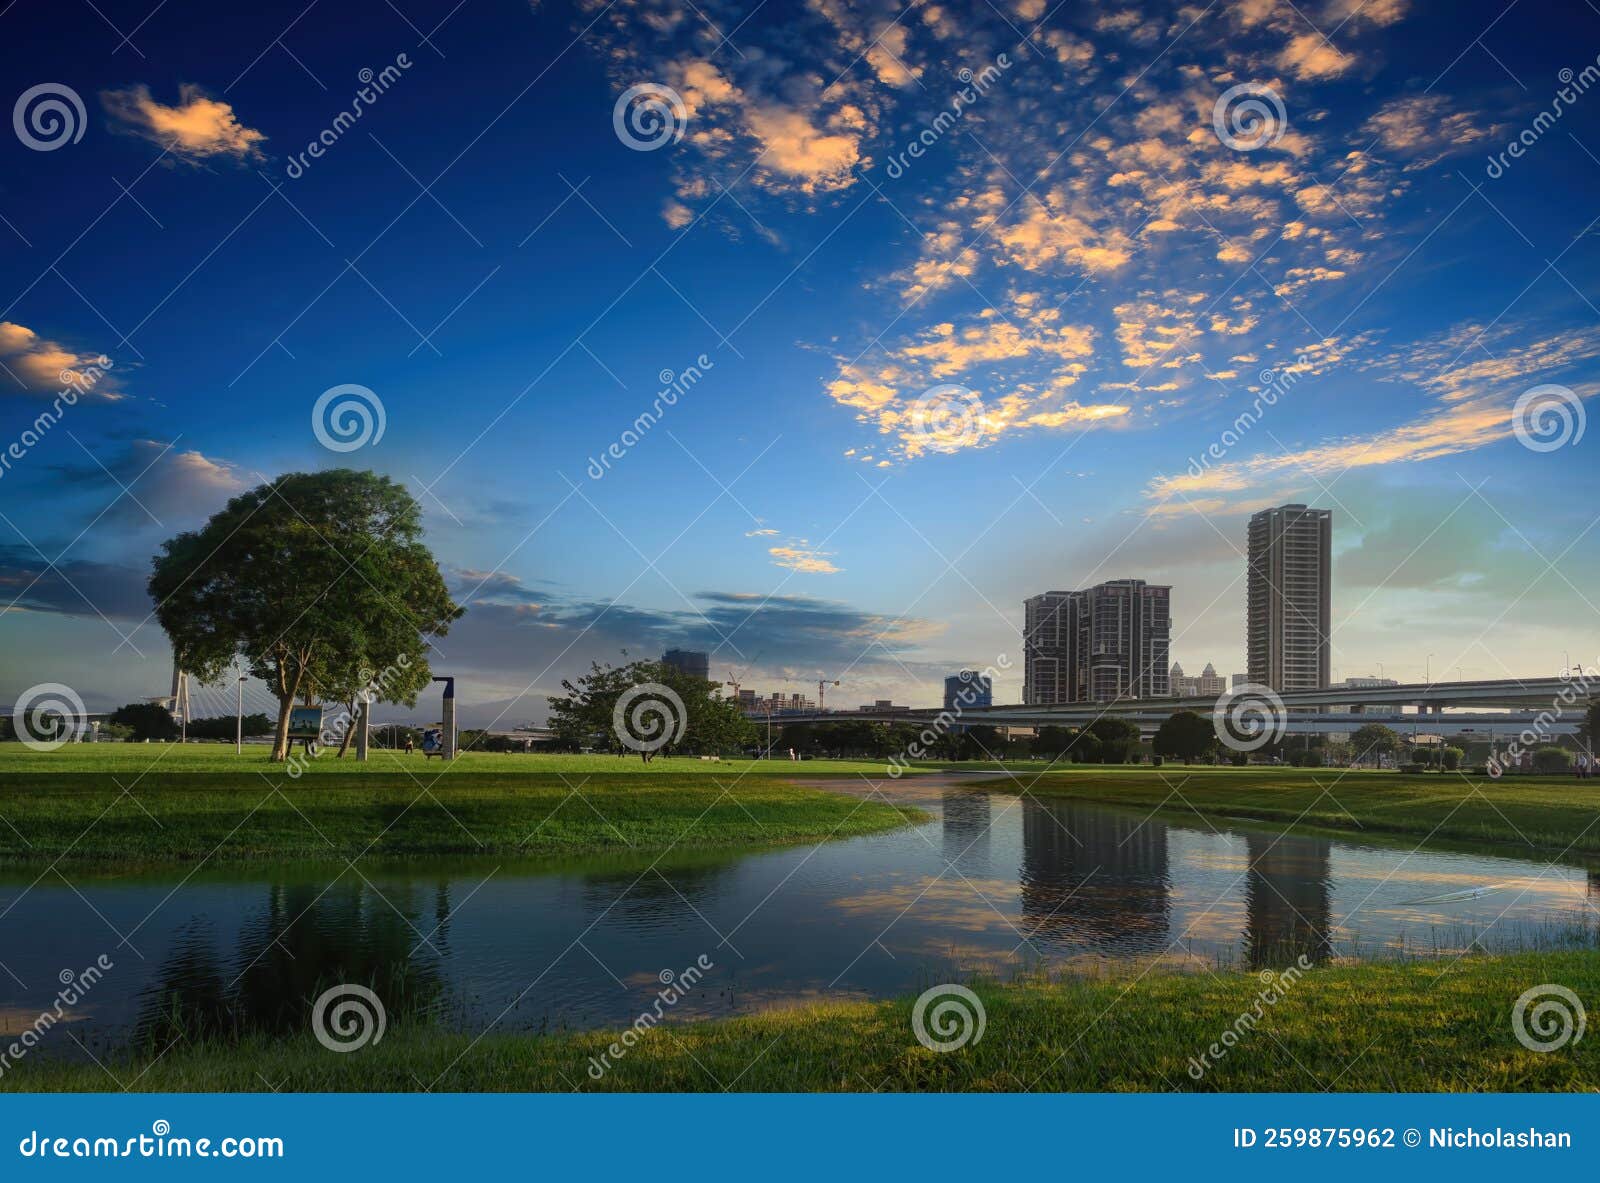 new taipei city, taiwan, 24 oct, 2022 : new taipei city metropolitan park sunset, taiwan